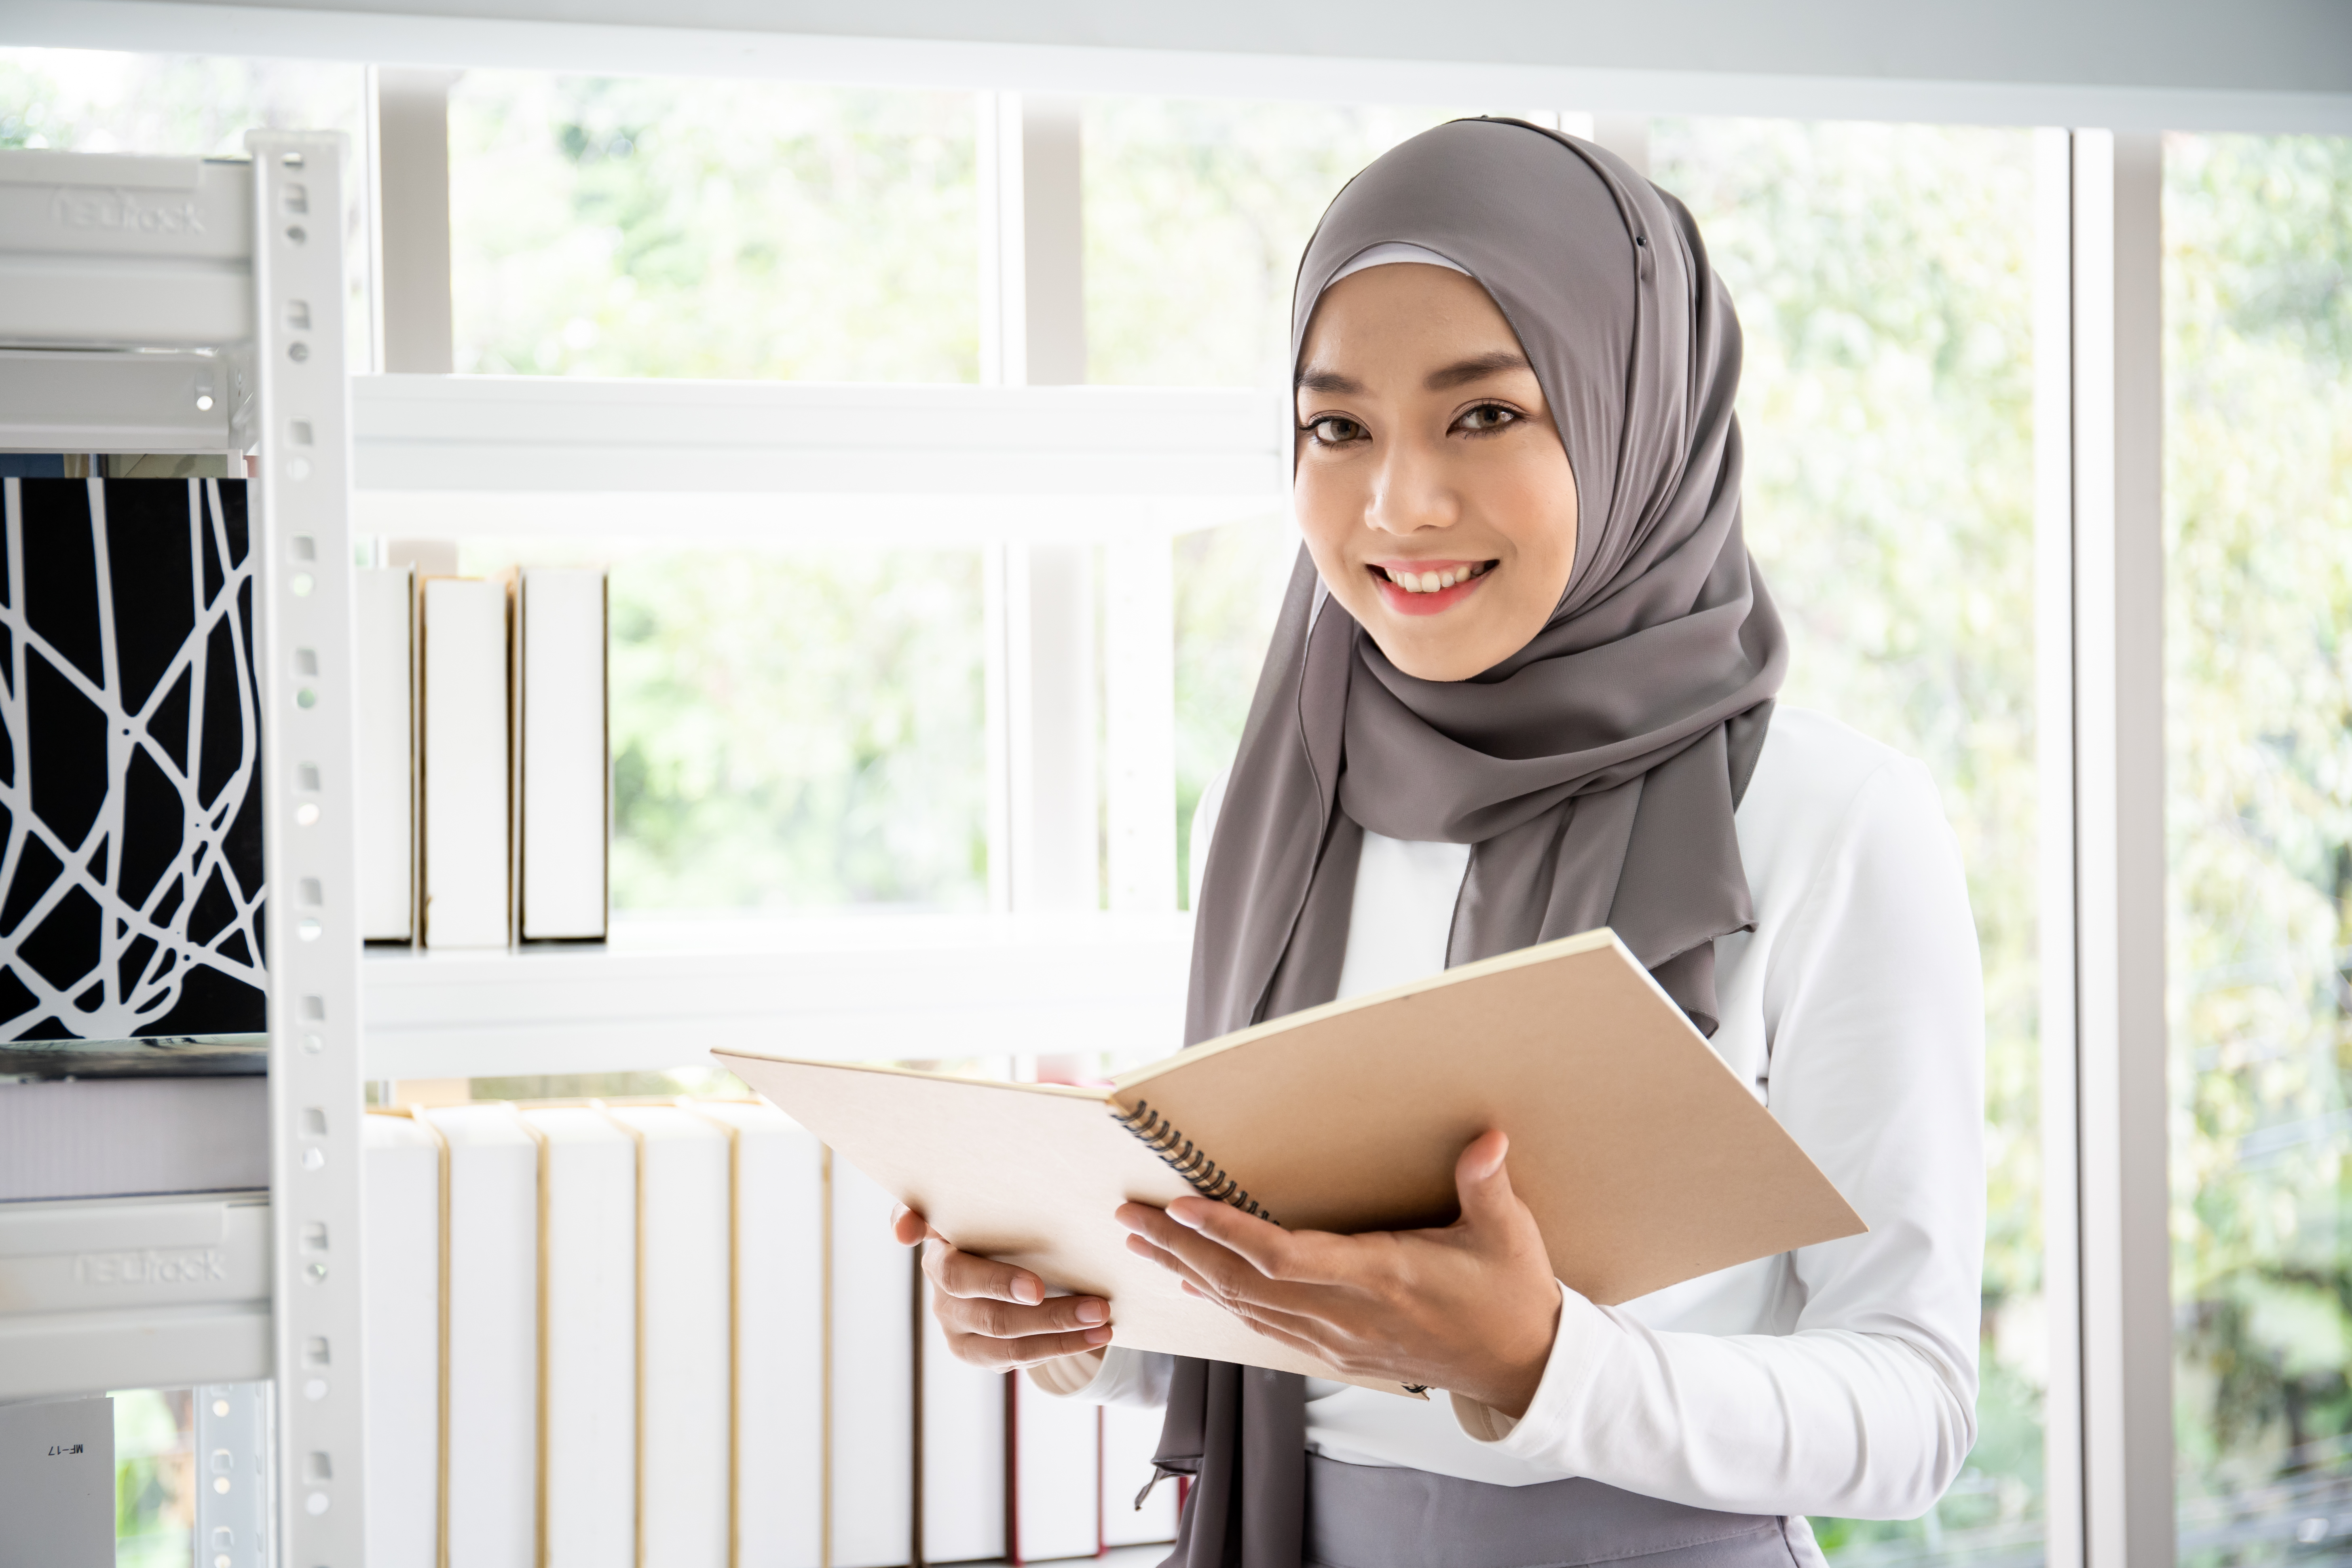 Skema dan Prinsip Asuransi Syariah yang Perlu Kamu Ketauhi